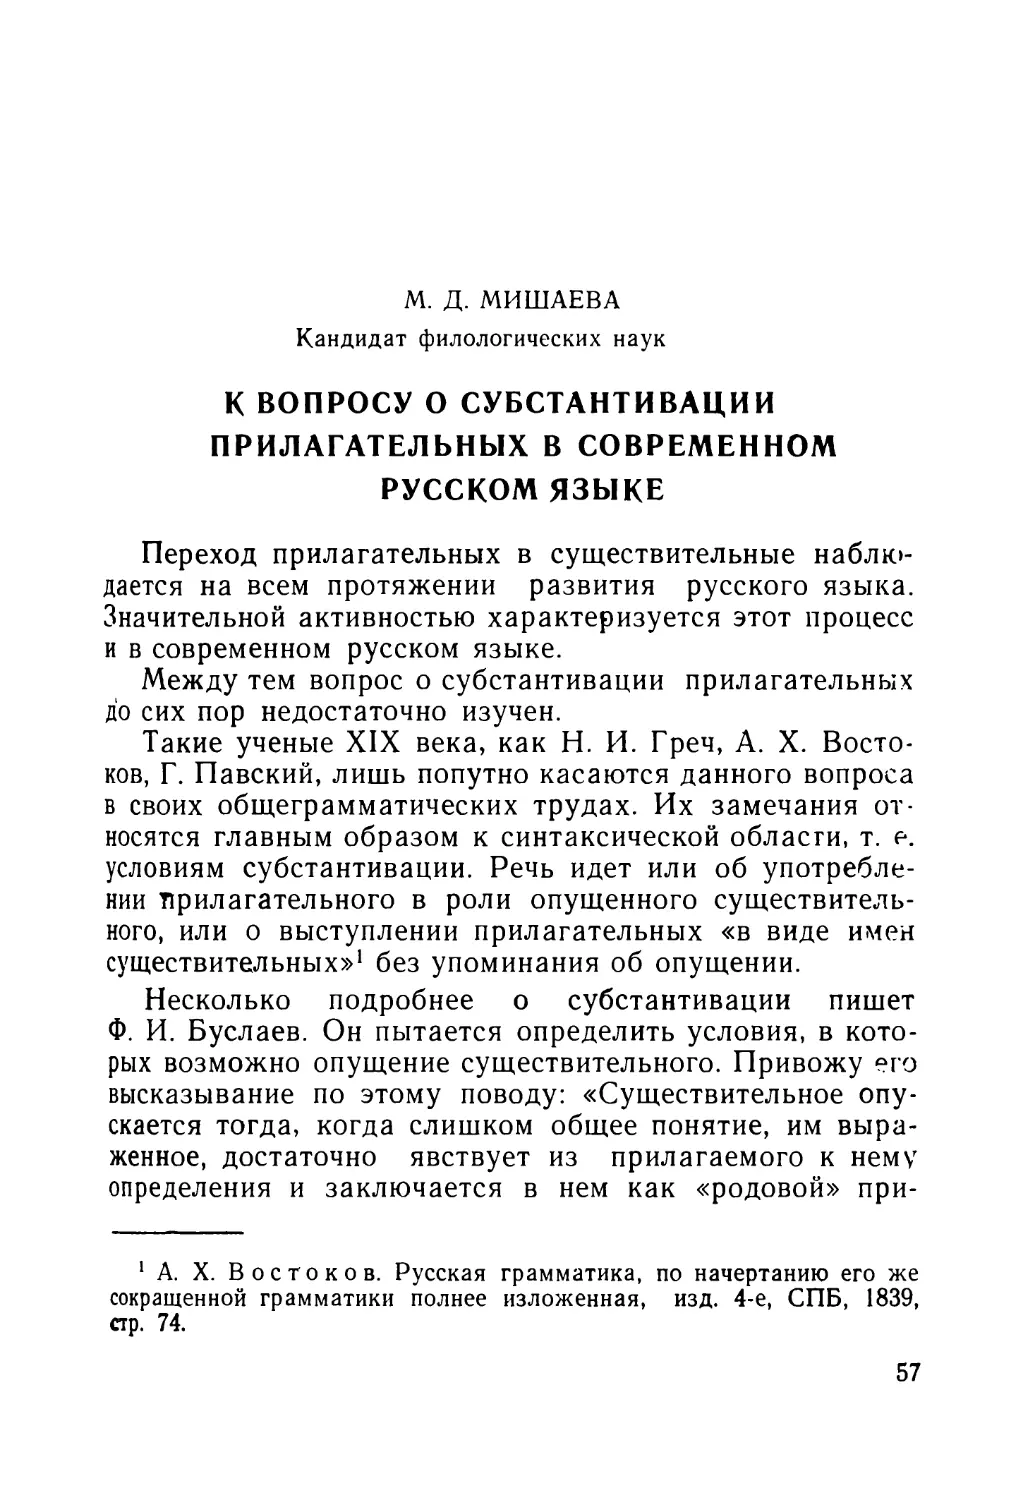 Мишаева М. Д. К вопросу о субстантивации прилагательных в современном русском языке